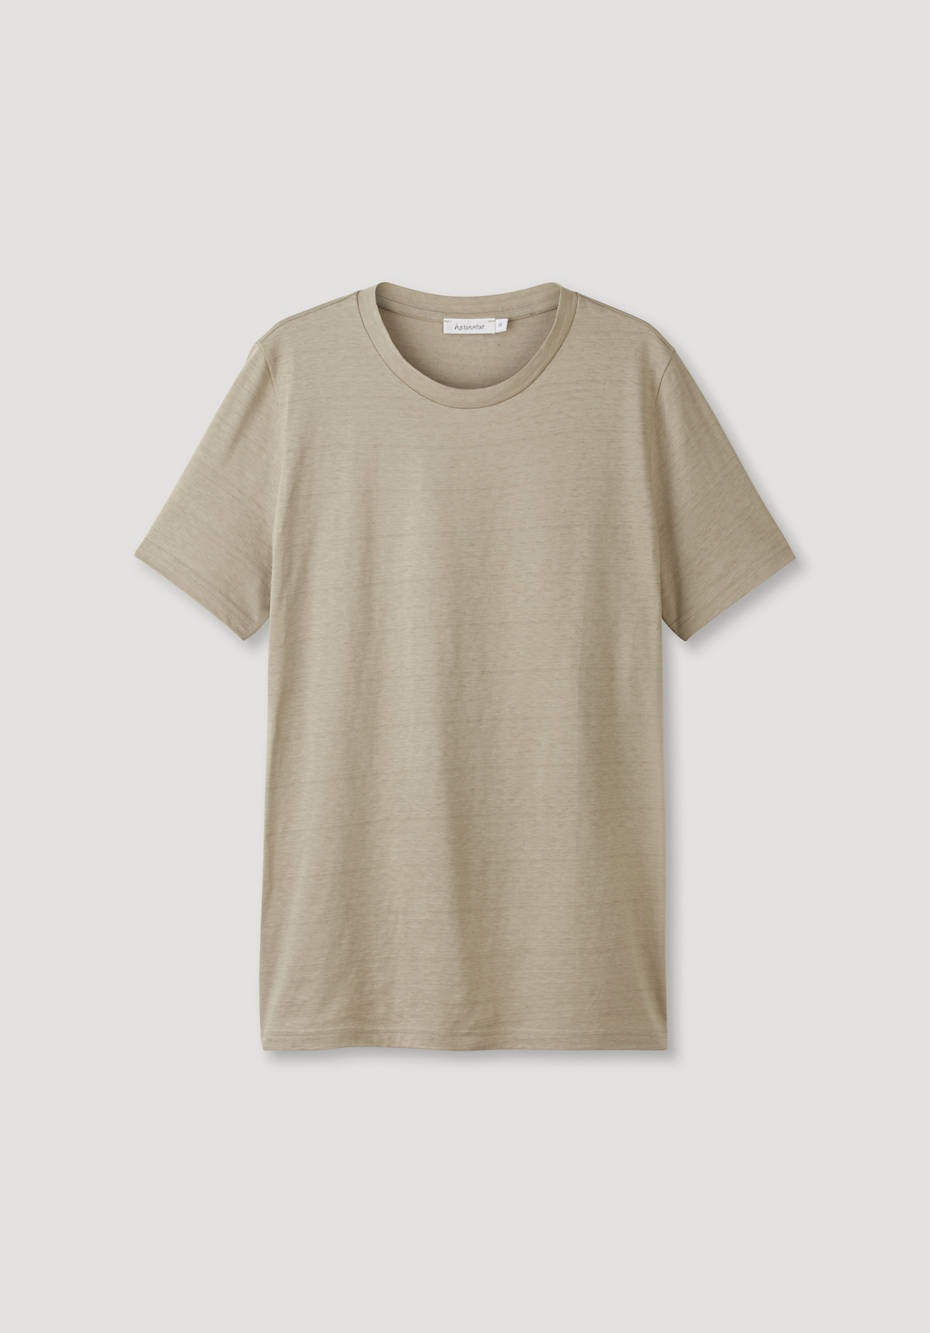 Limited by nature Kurzarm-Shirt aus reiner Bio-Baumwolle